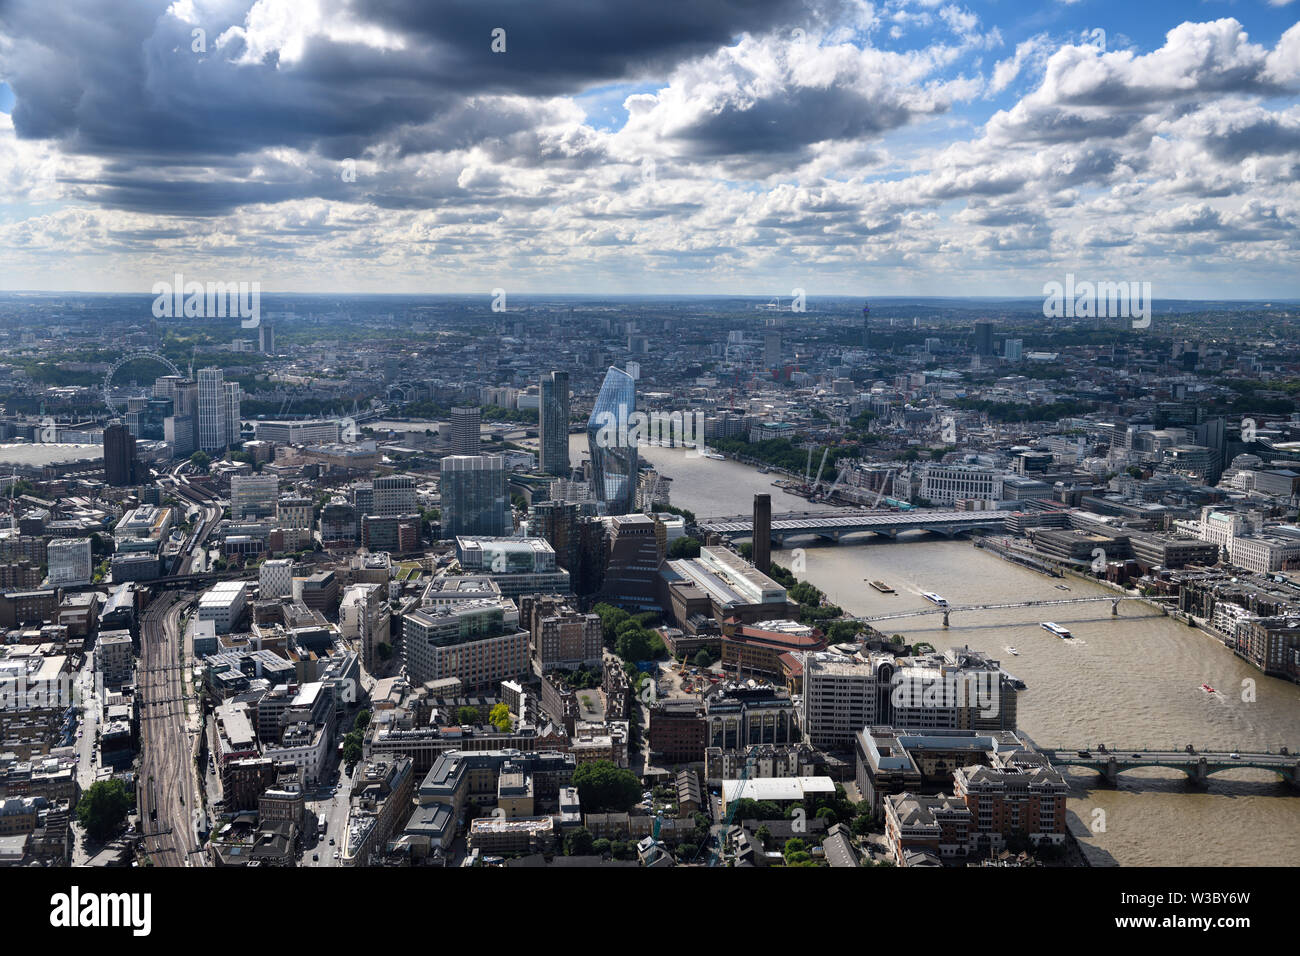 Vue aérienne de l'Angleterre du sud de Londres avec le London Eye, les voies ferrées de la vase et de ponts sur la Tamise boueuse Banque D'Images